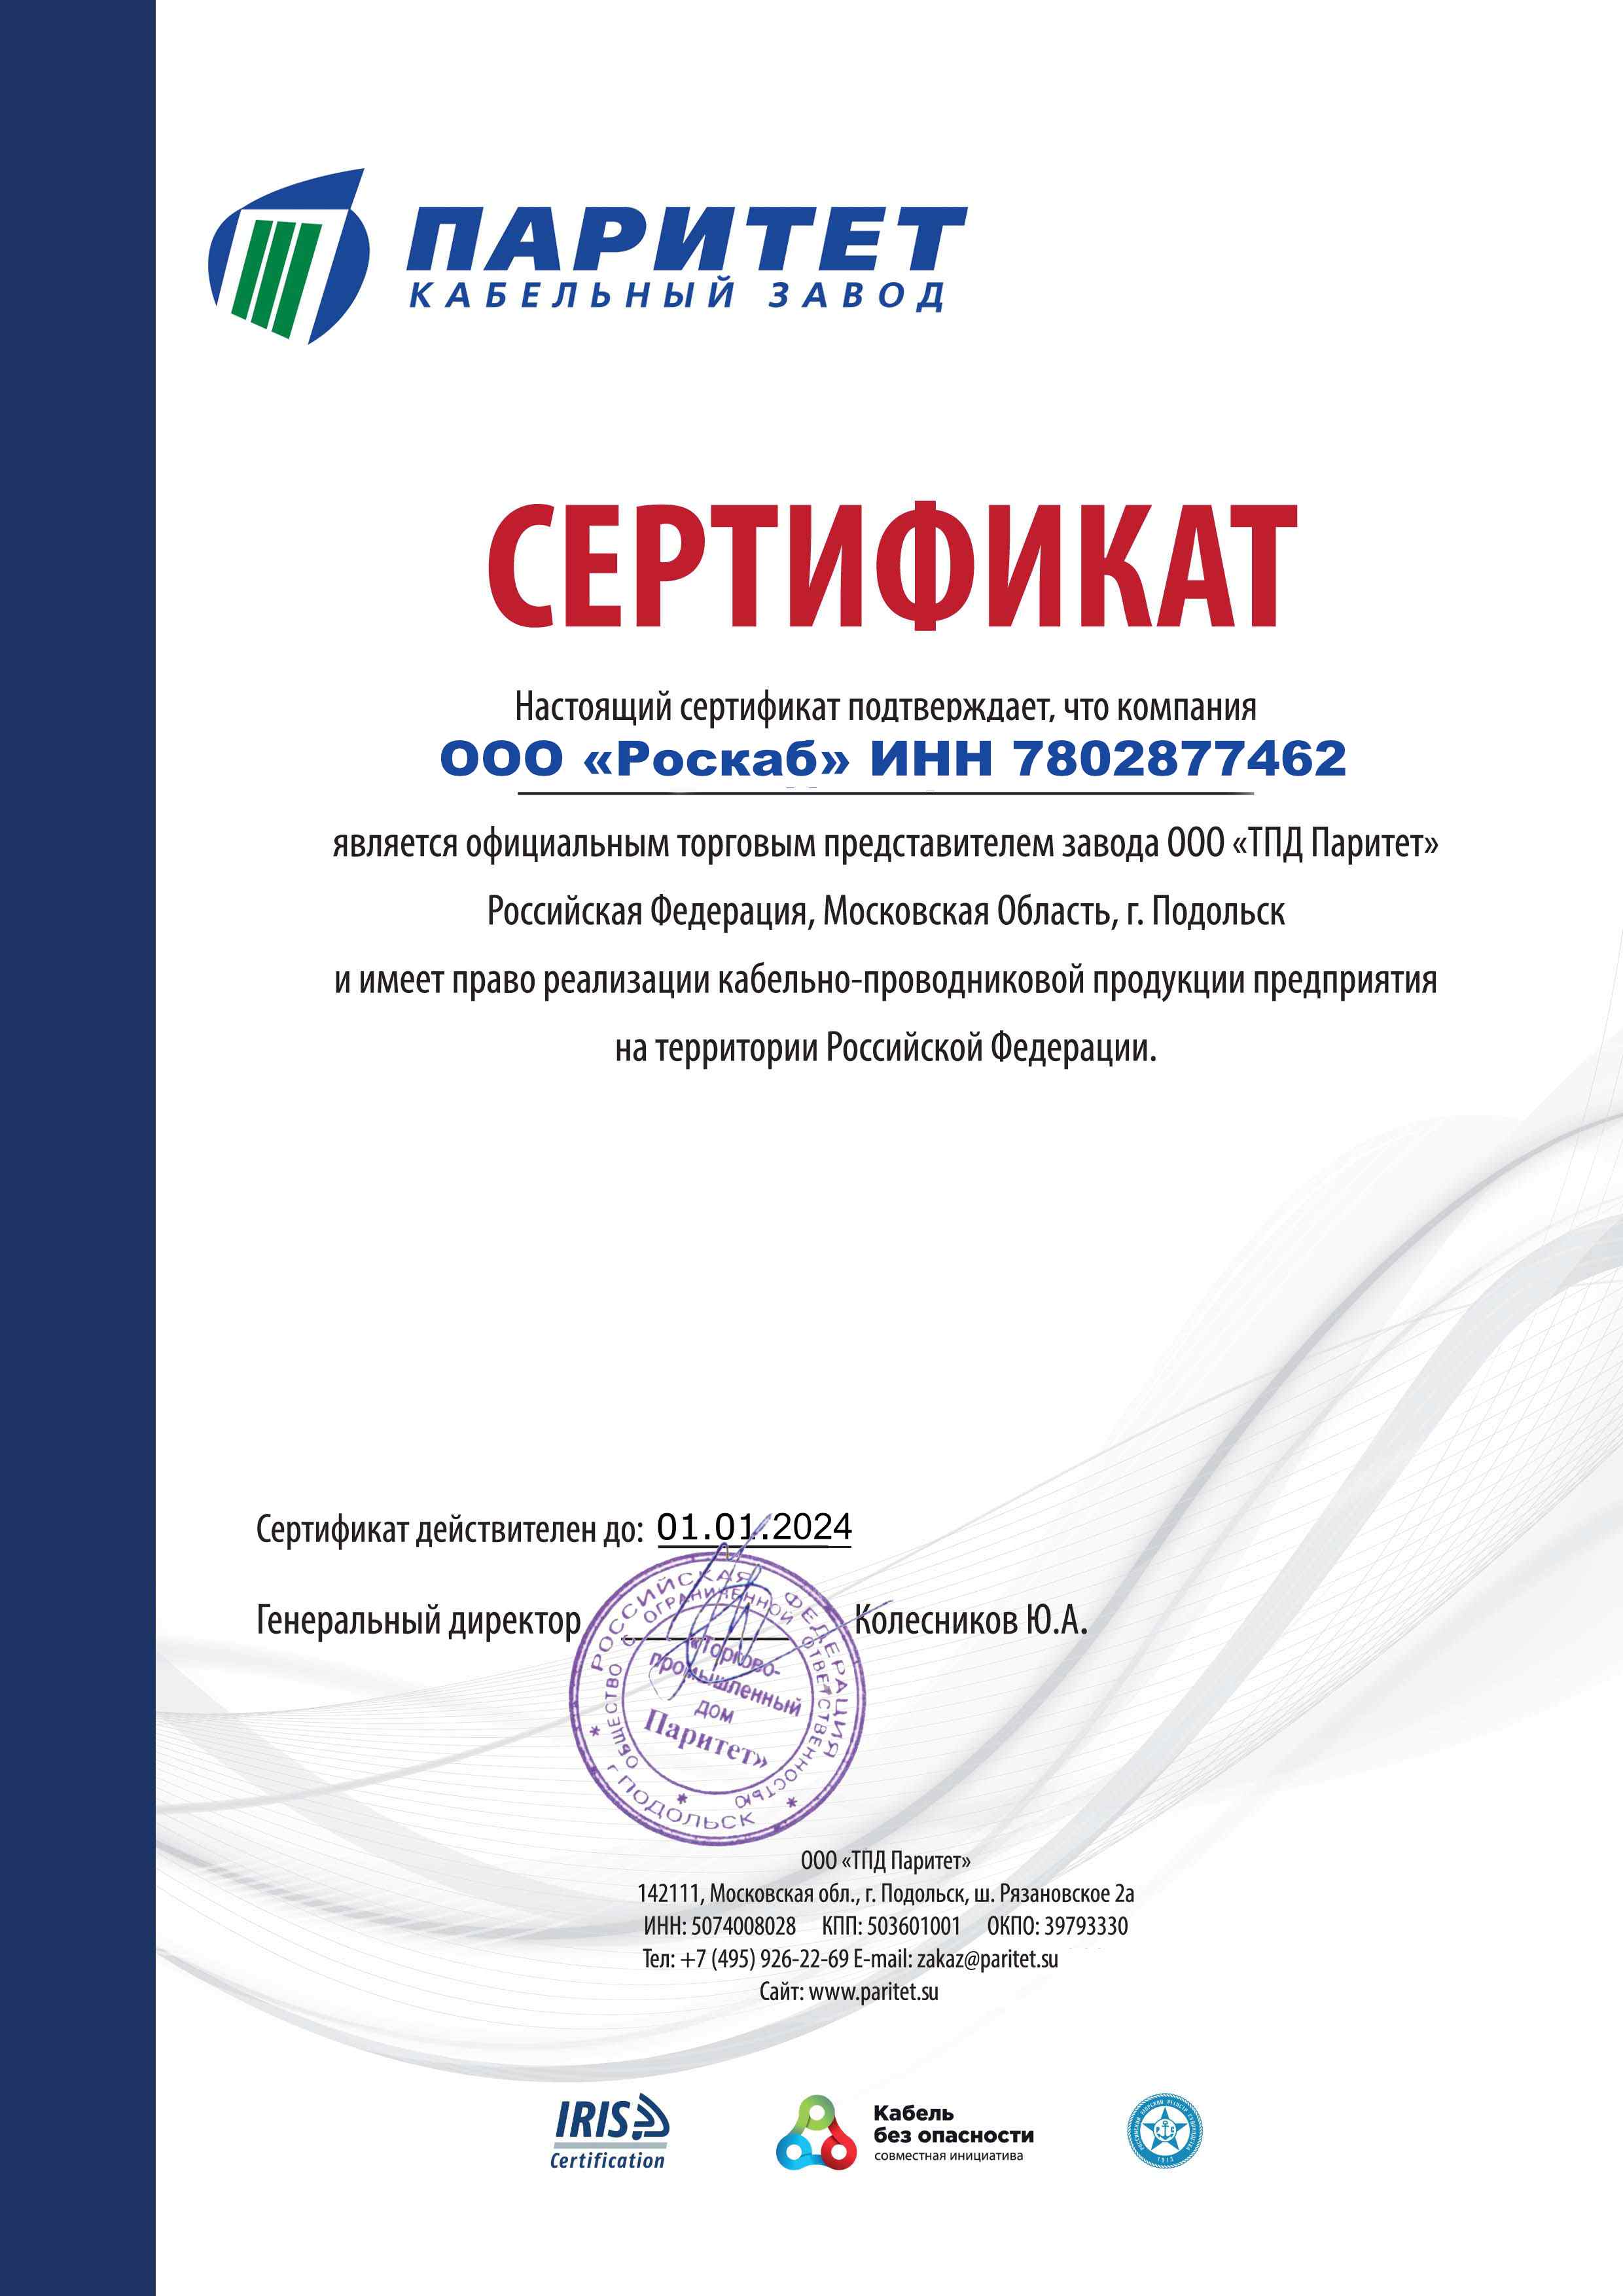 Сертификат представителя ТПД Паритет